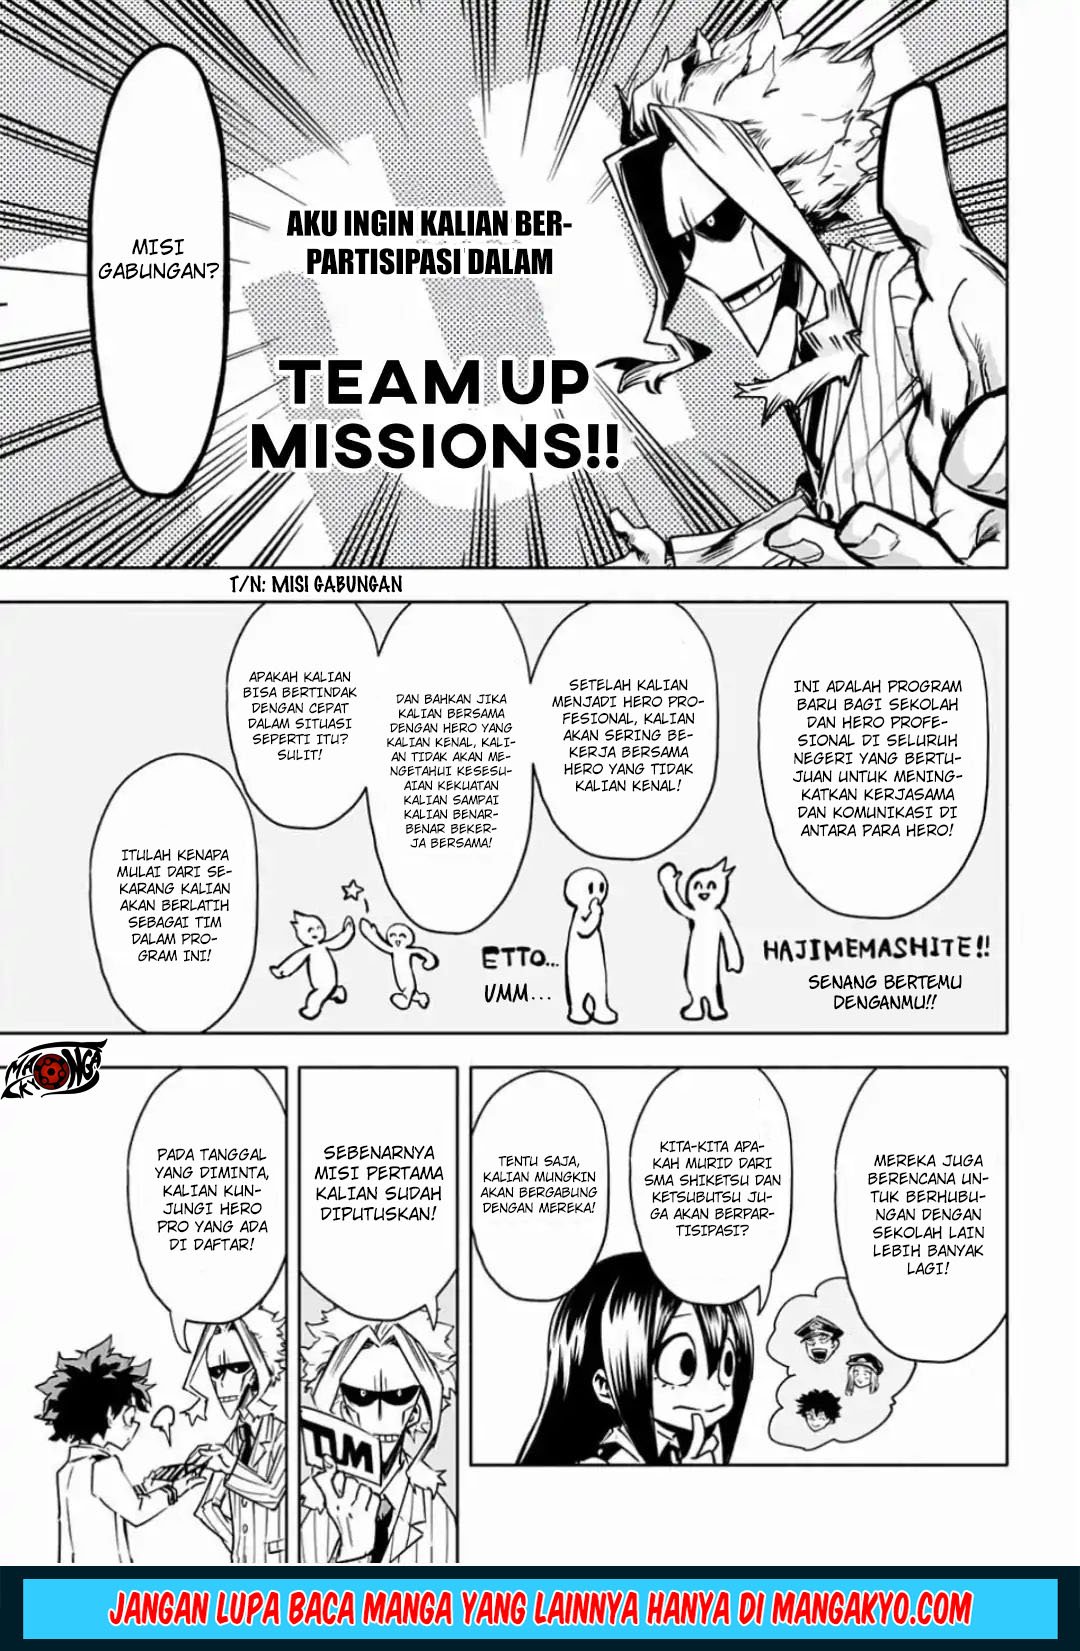 Baca Boku no Hero Academia Team Up Mission Chapter 1  - GudangKomik